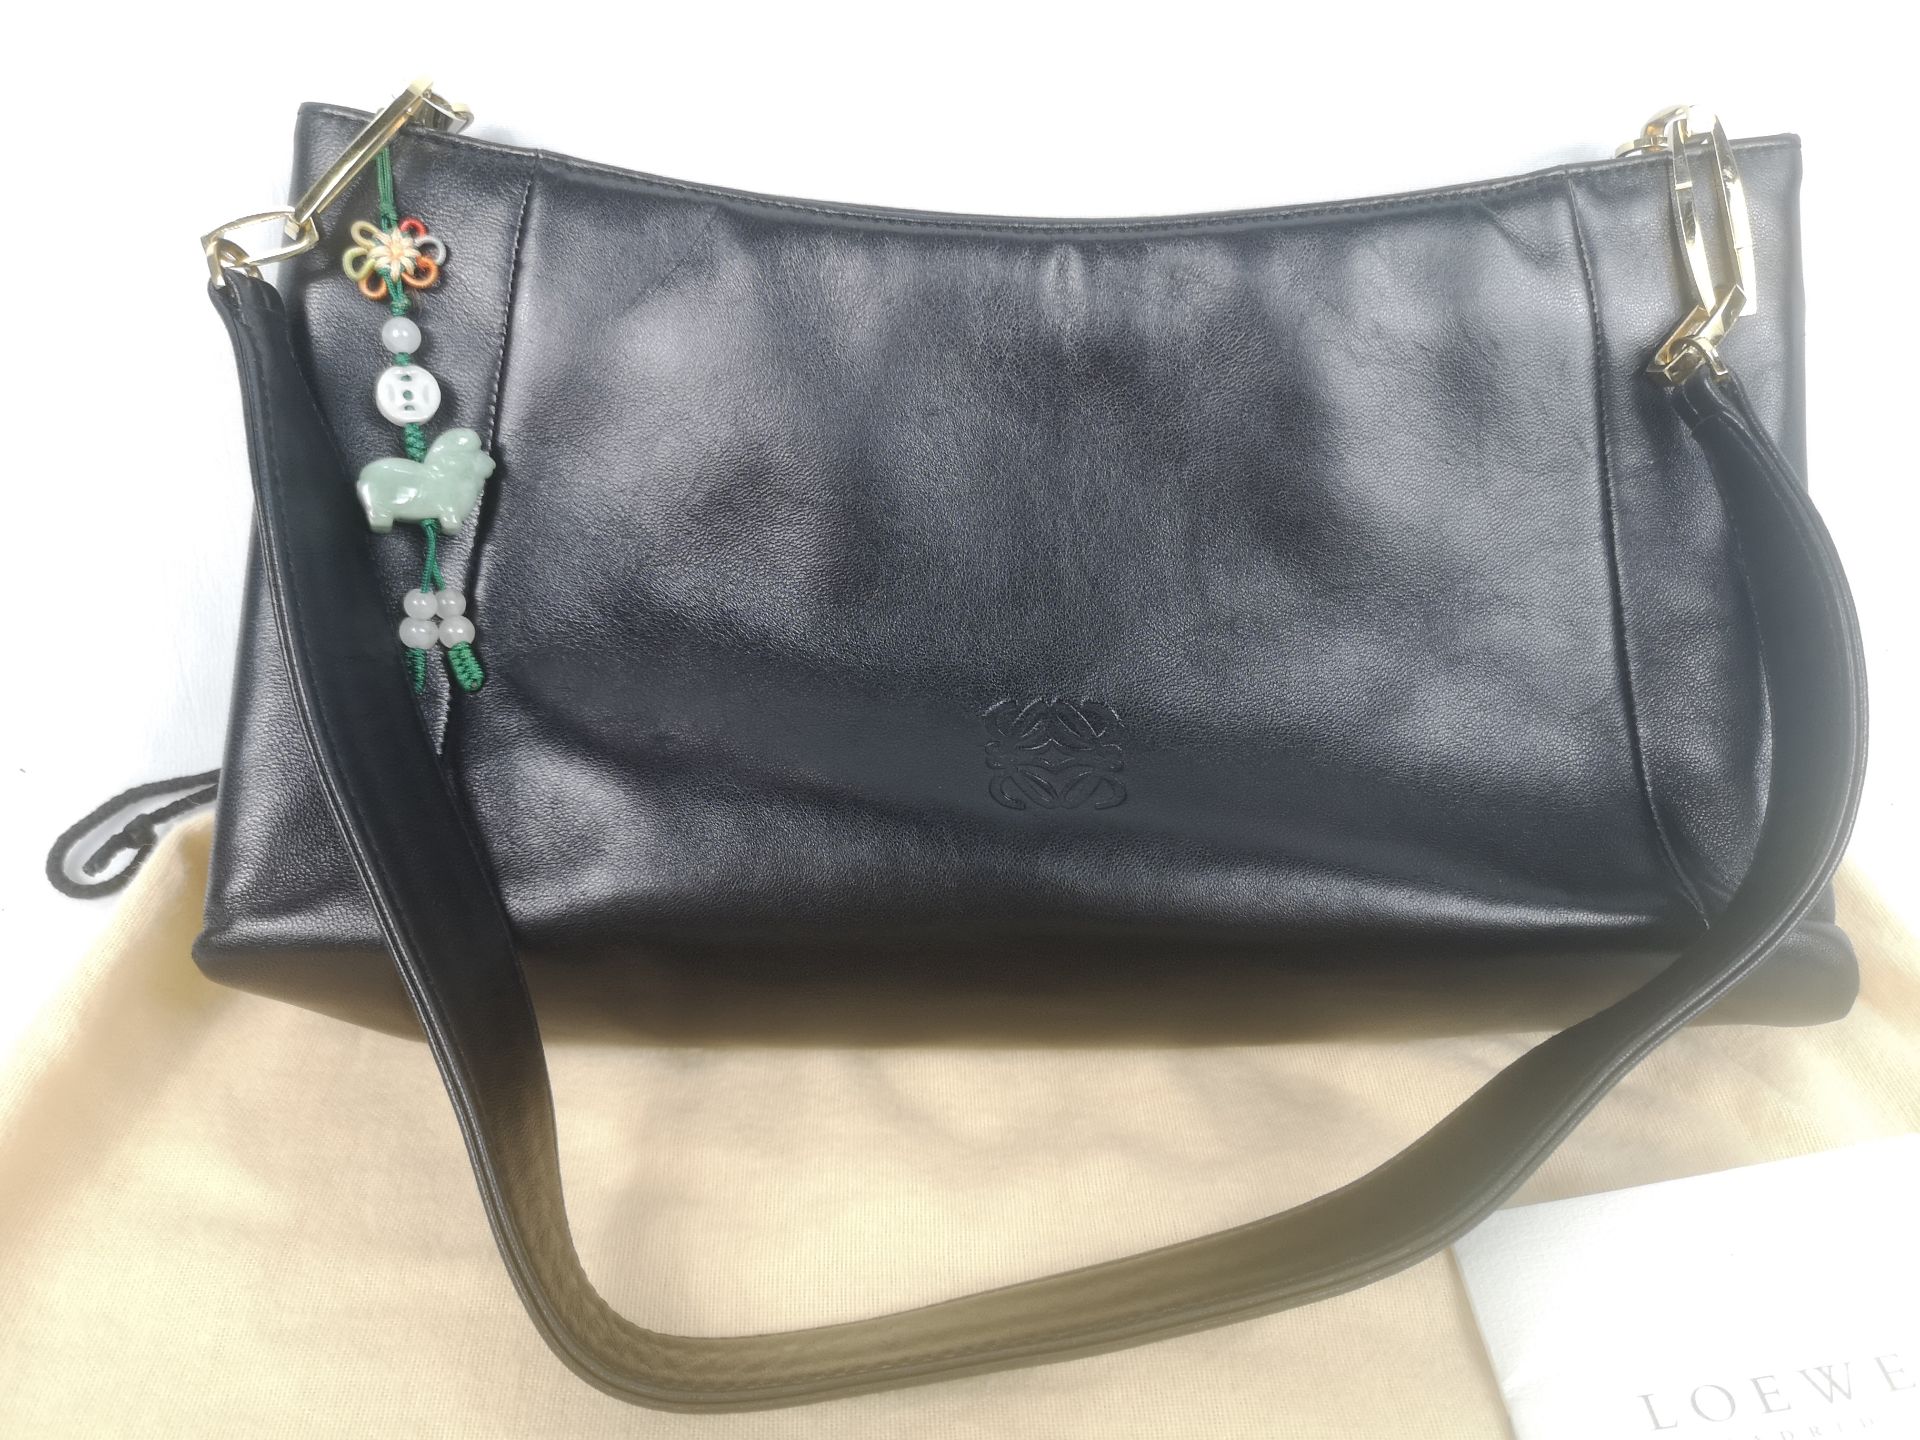 Loewe black leather handbag